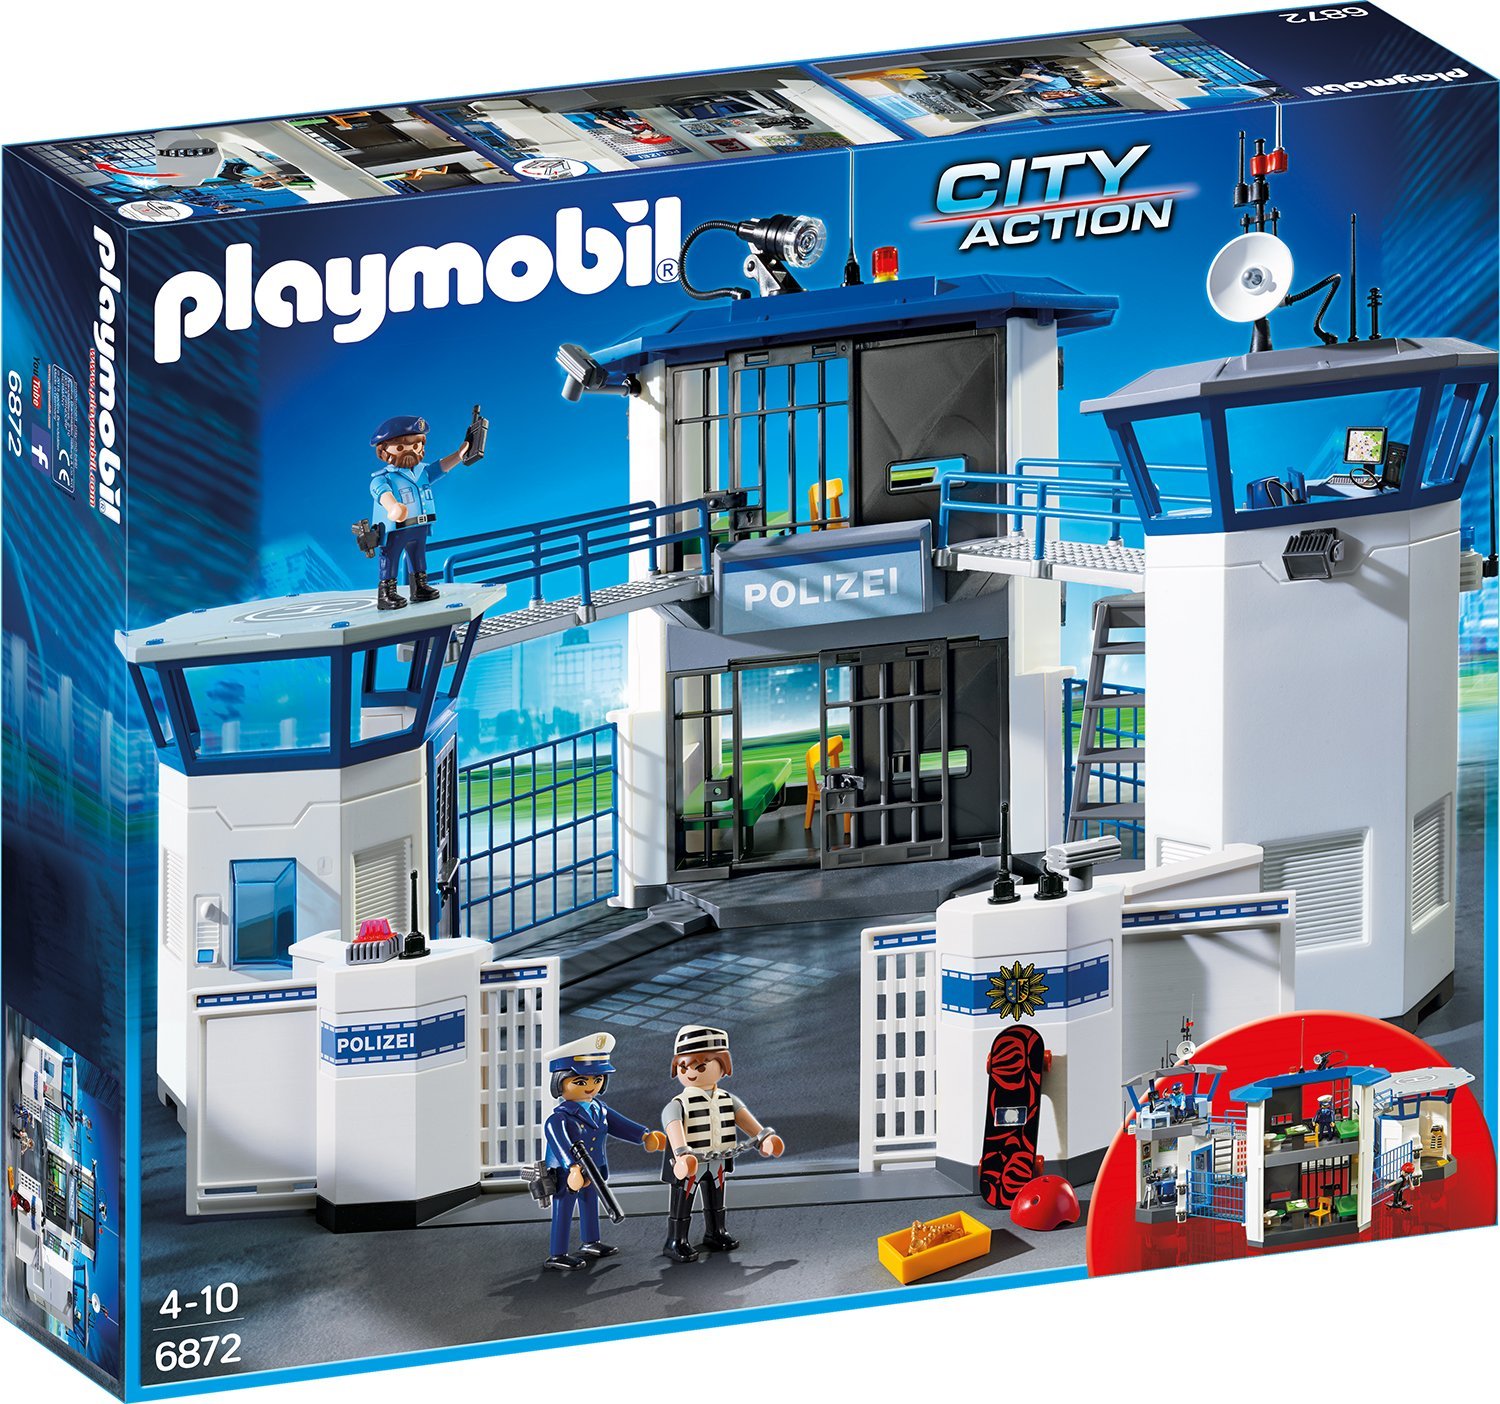 Playmobil 6872 - Polizei-Kommandozentrale mit Gef�ngnis (City Action)